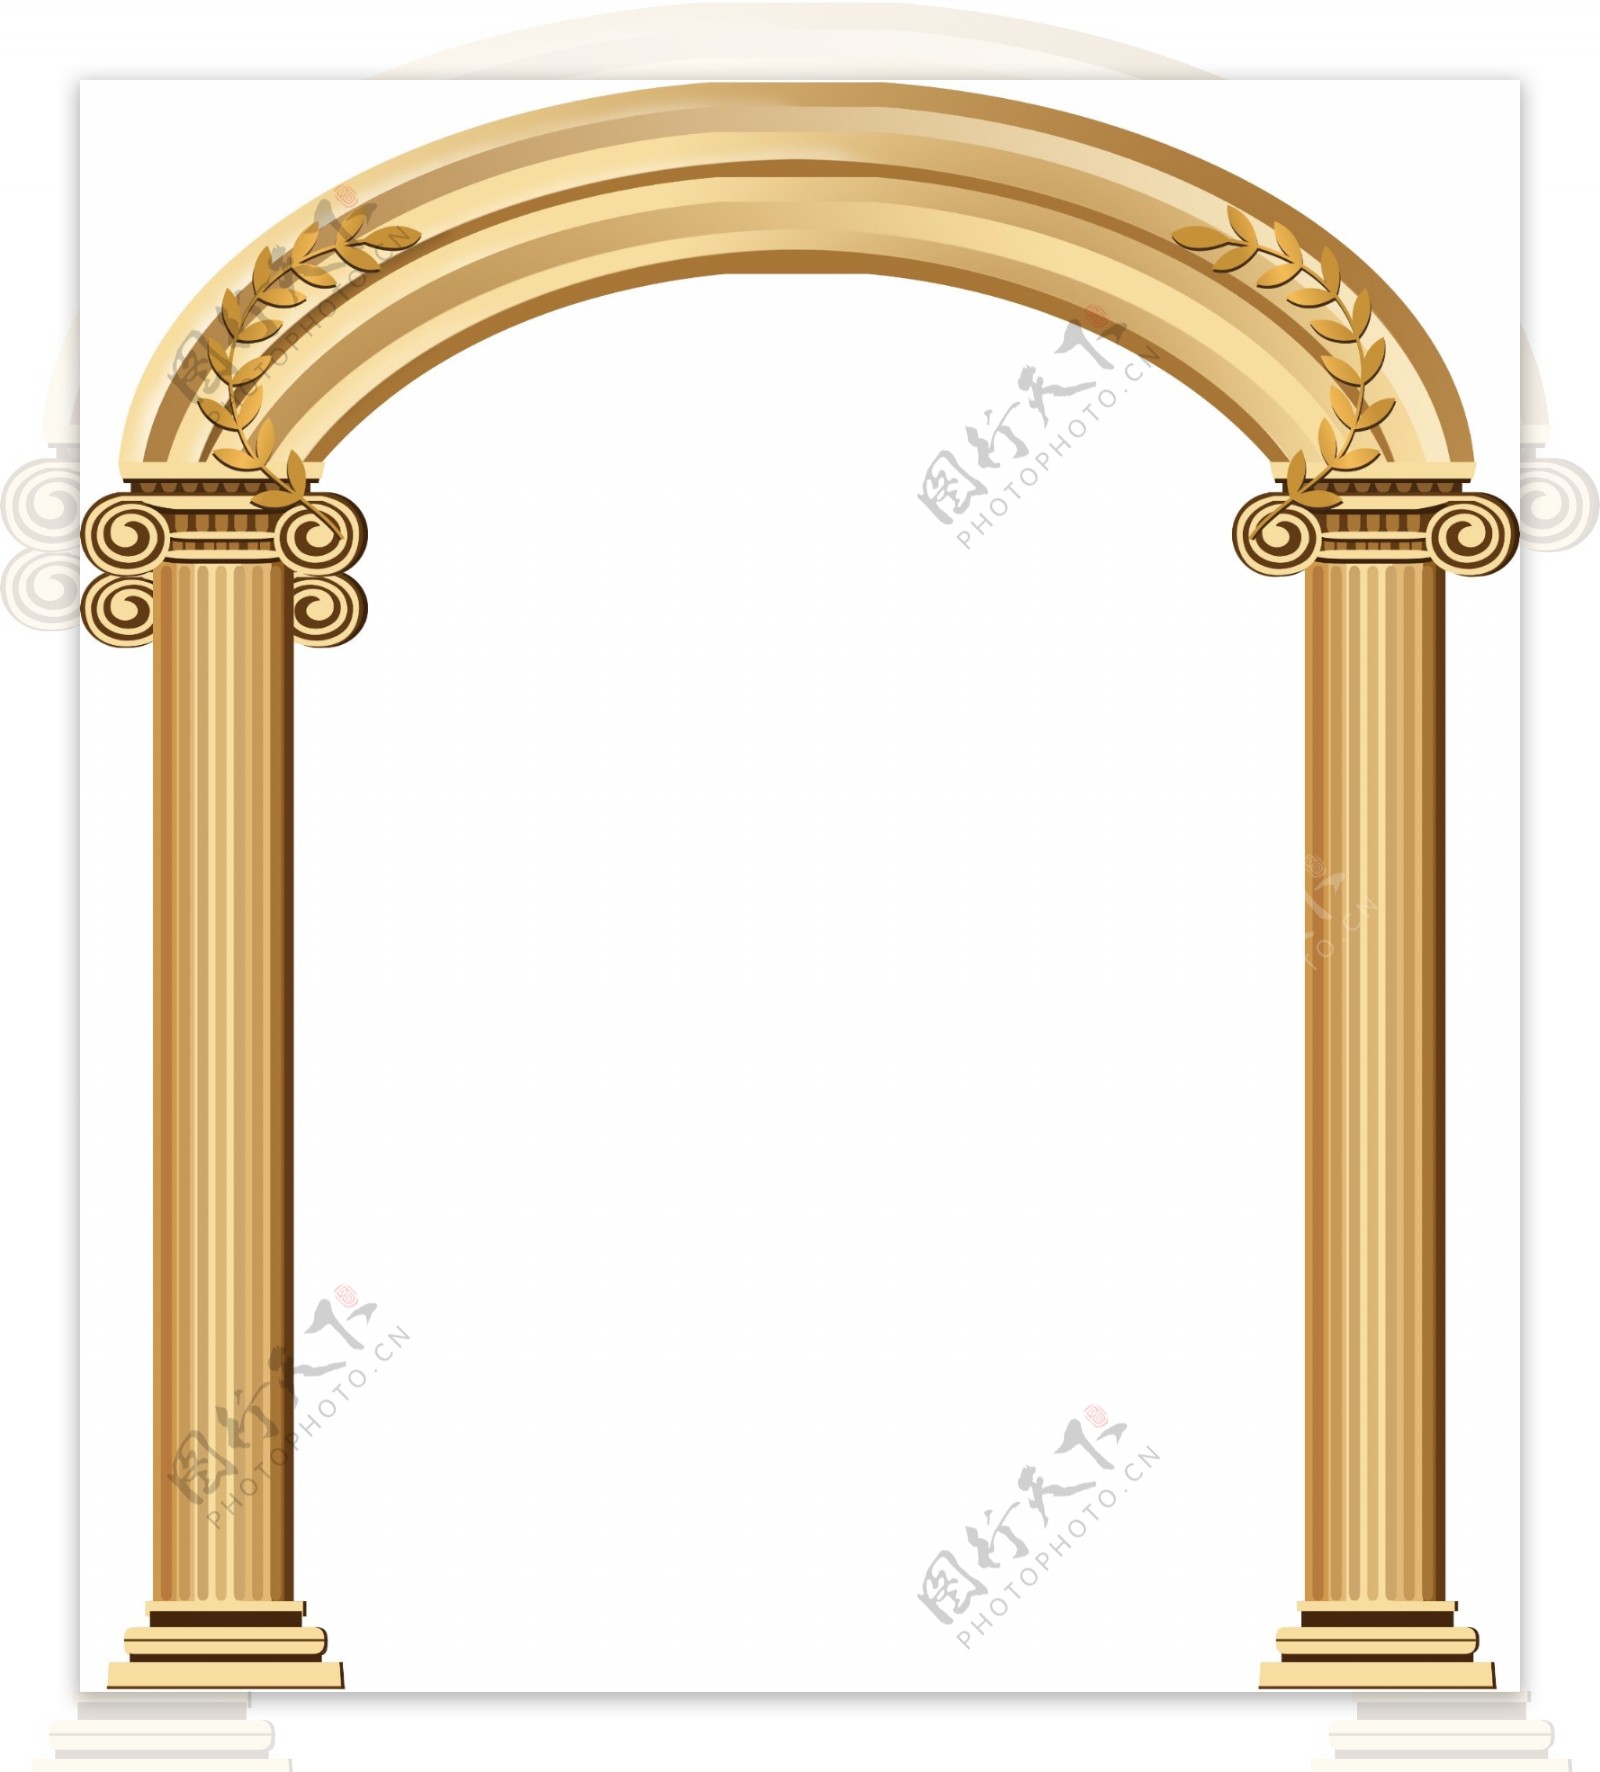 罗马柱子拱门